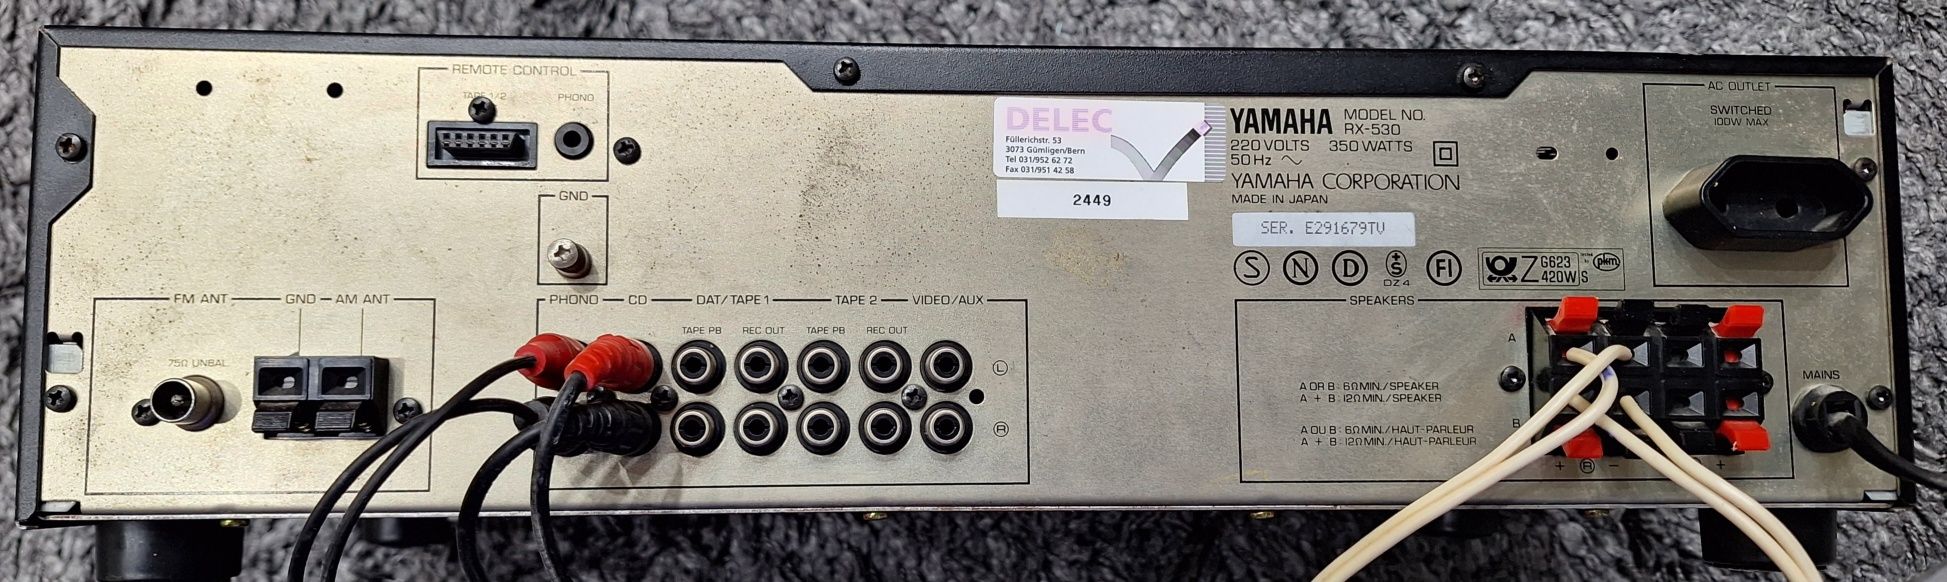 Ресивър Yamaha rx530 без забележки